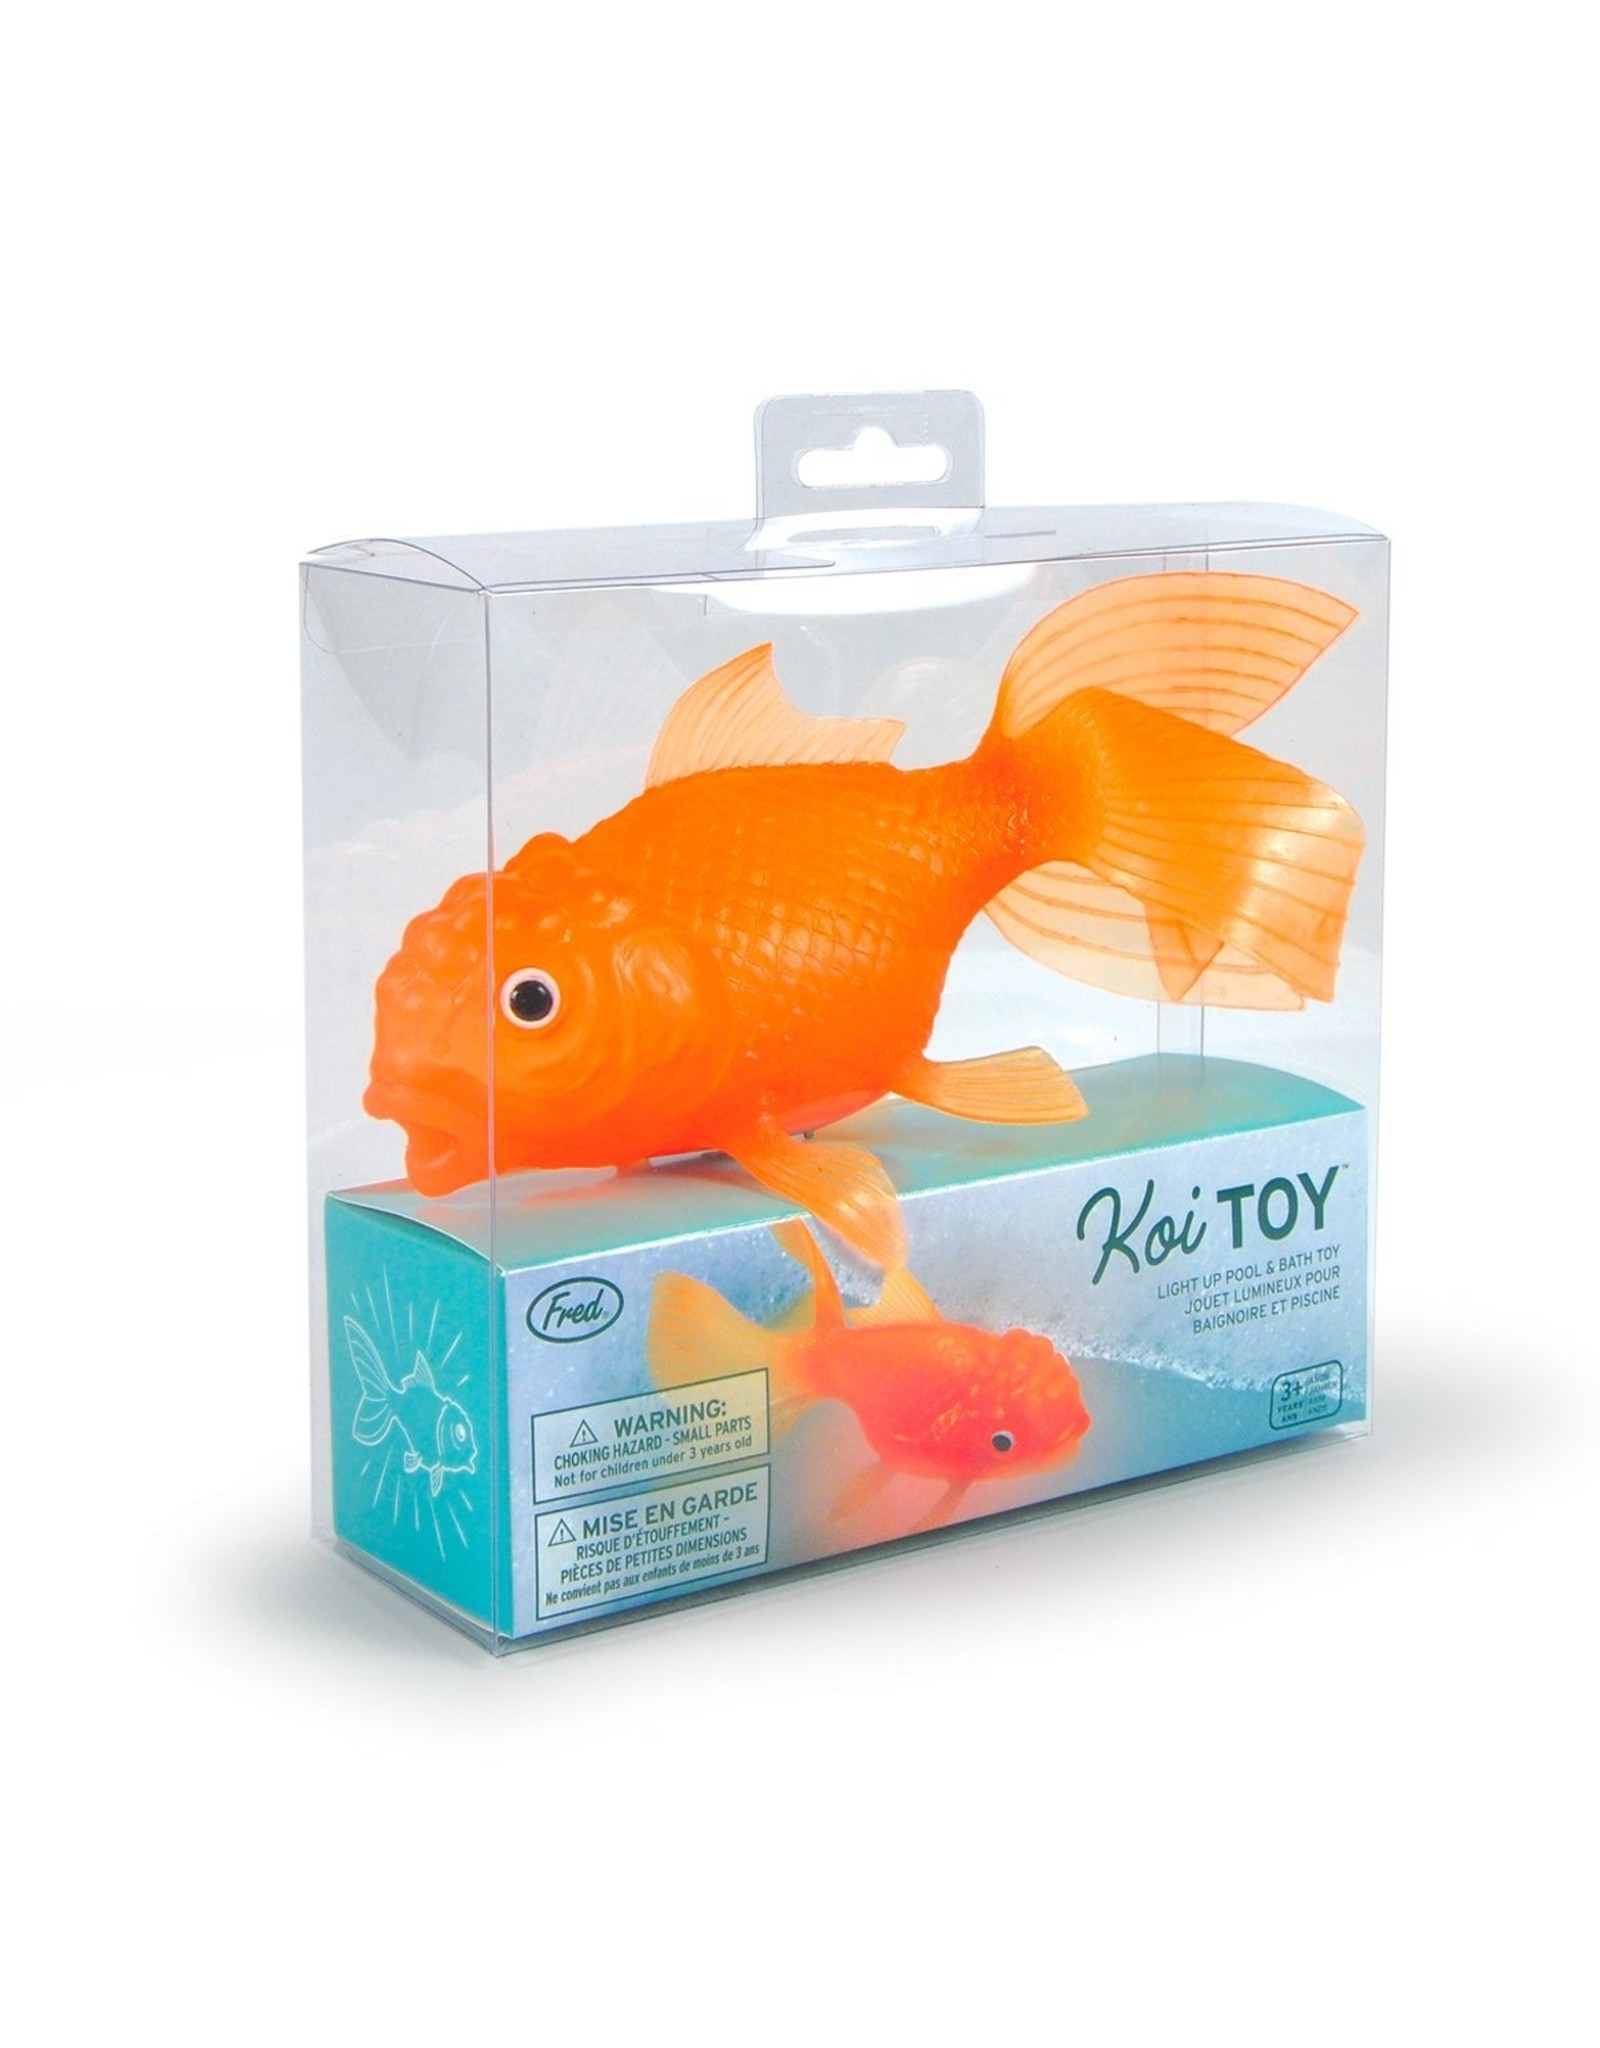 Fred Koi Toy - Light Up Goldfish